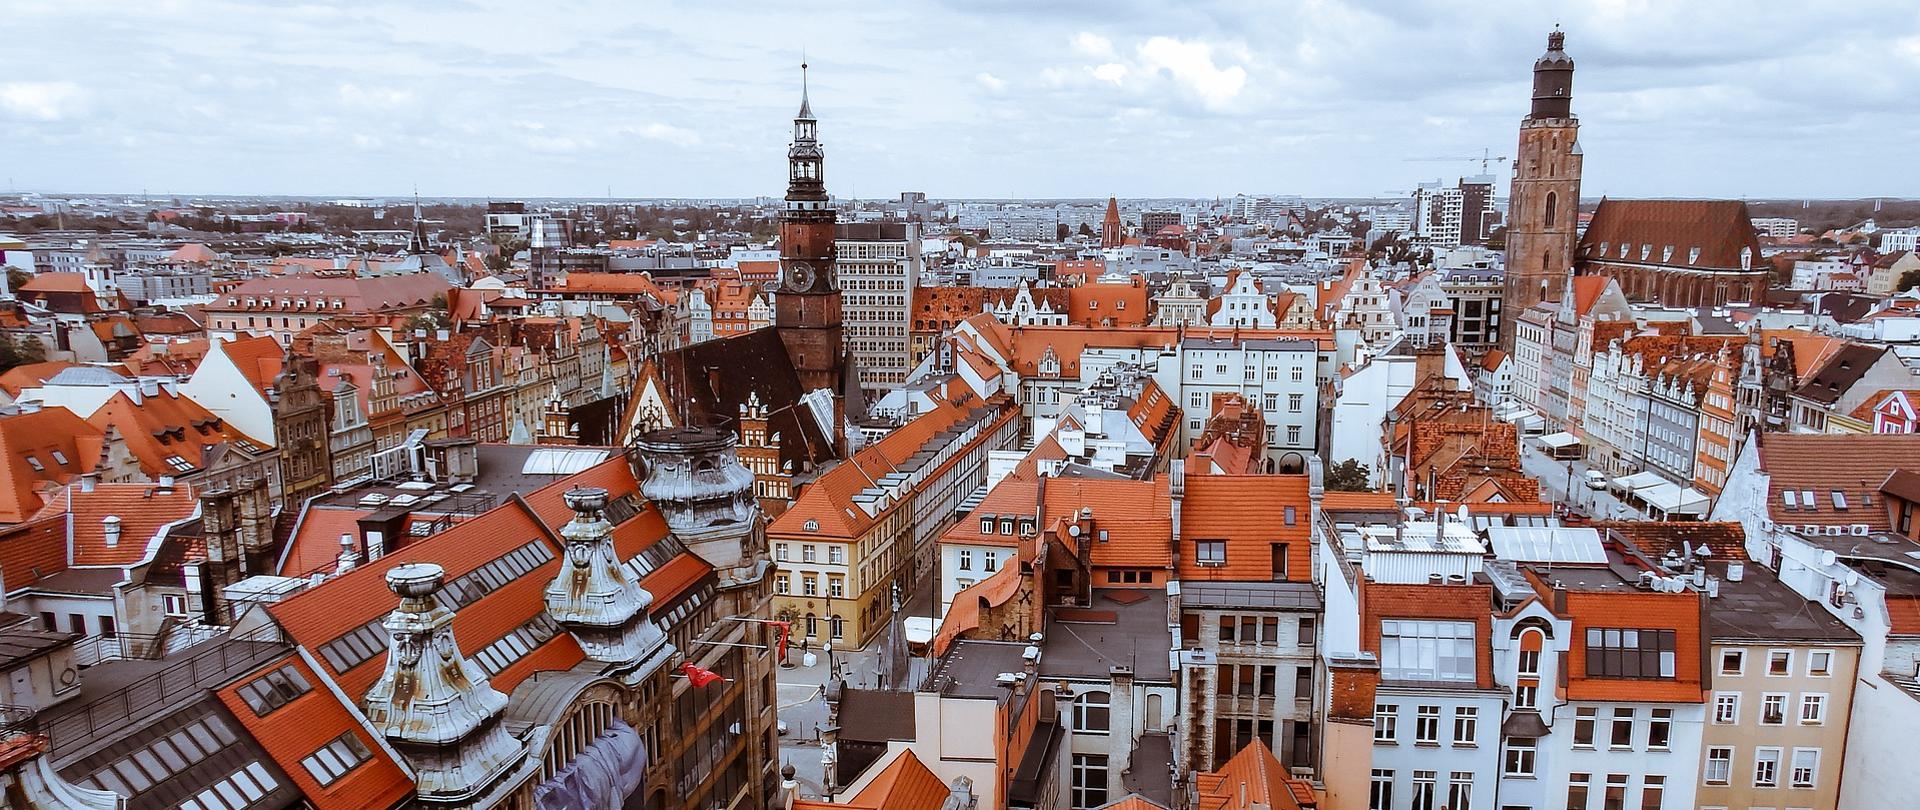 Panorama starego miasta Wrocławia - widok z lotu ptaka.